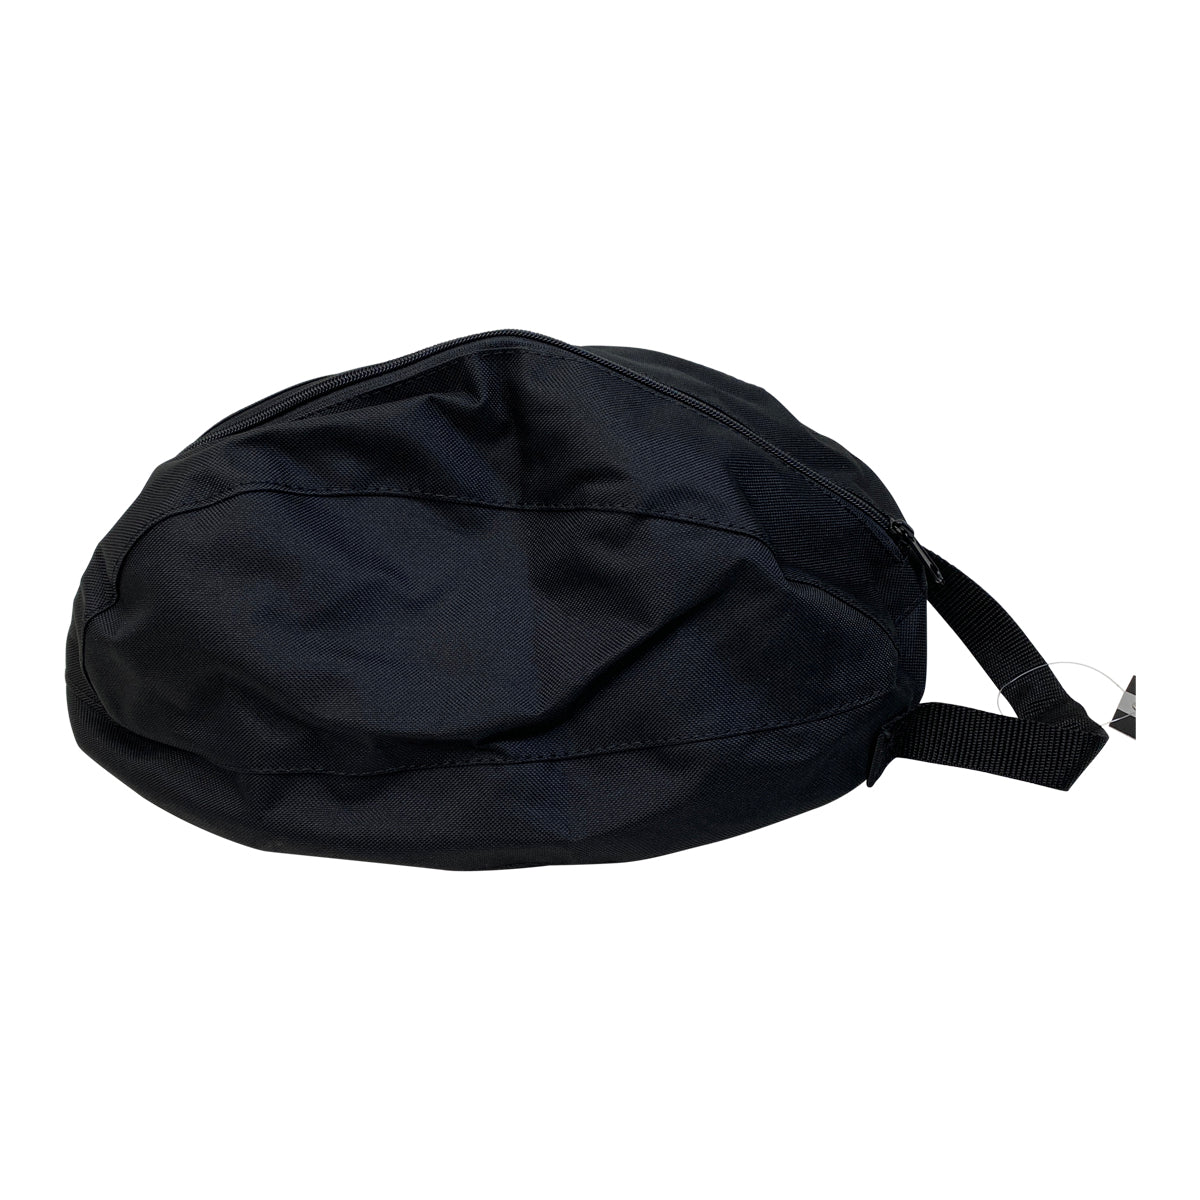 Horze Helmet Bag in Black